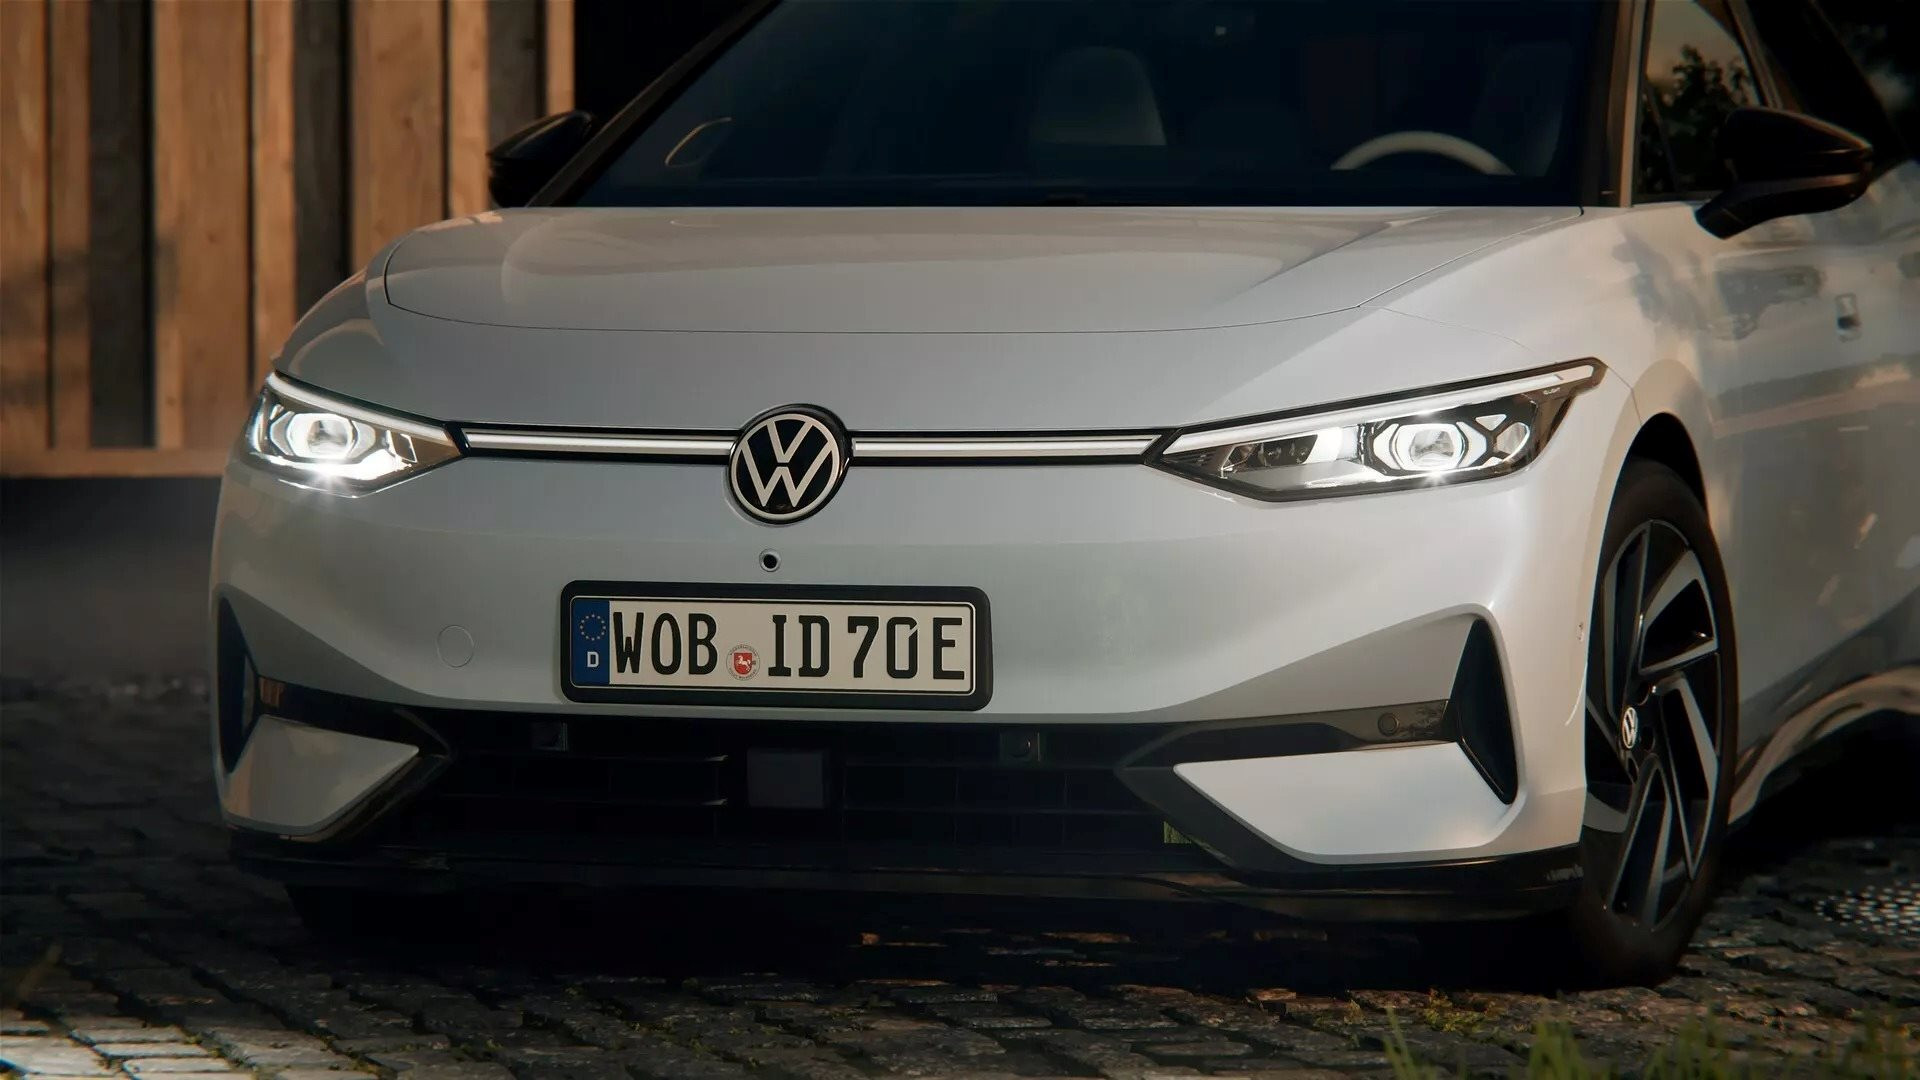 Nếu có ý định mua một chiếc ô tô điện trong 2 năm tới, bạn sẽ hối tiếc nếu bỏ qua mẫu Volkswagen đẹp ‘không tì vết’, tầm hoạt động lên đến 700 km này - Ảnh 3.